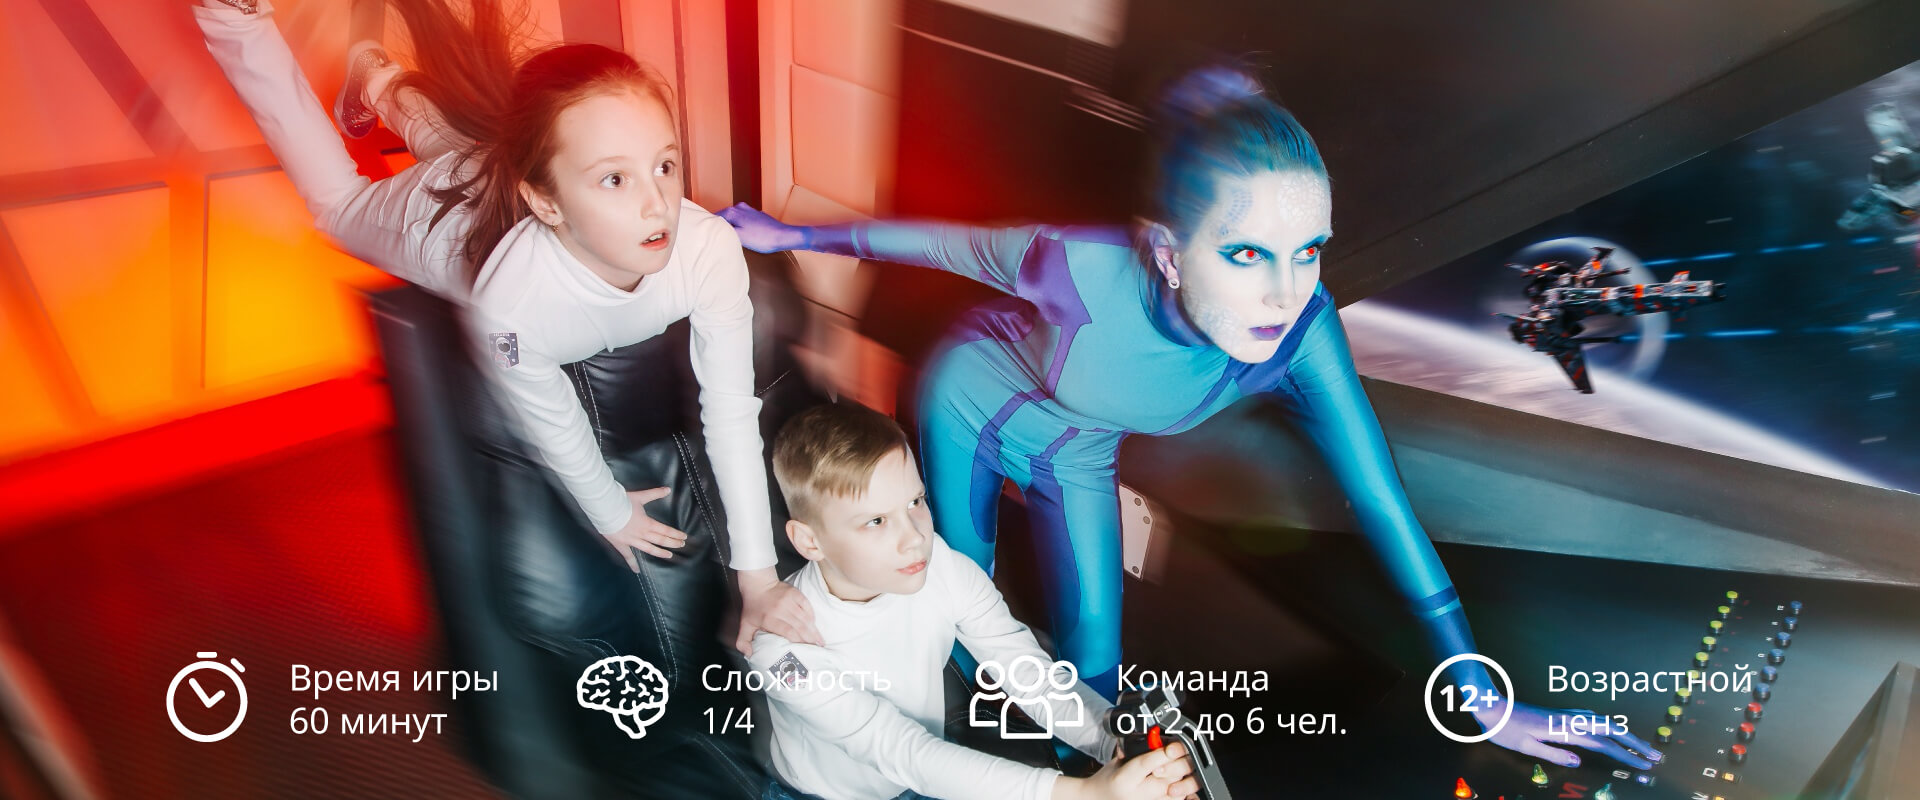 Квест Космос Kids в Екатеринбурге от Авантюры. Квесты в Екатеринбурге